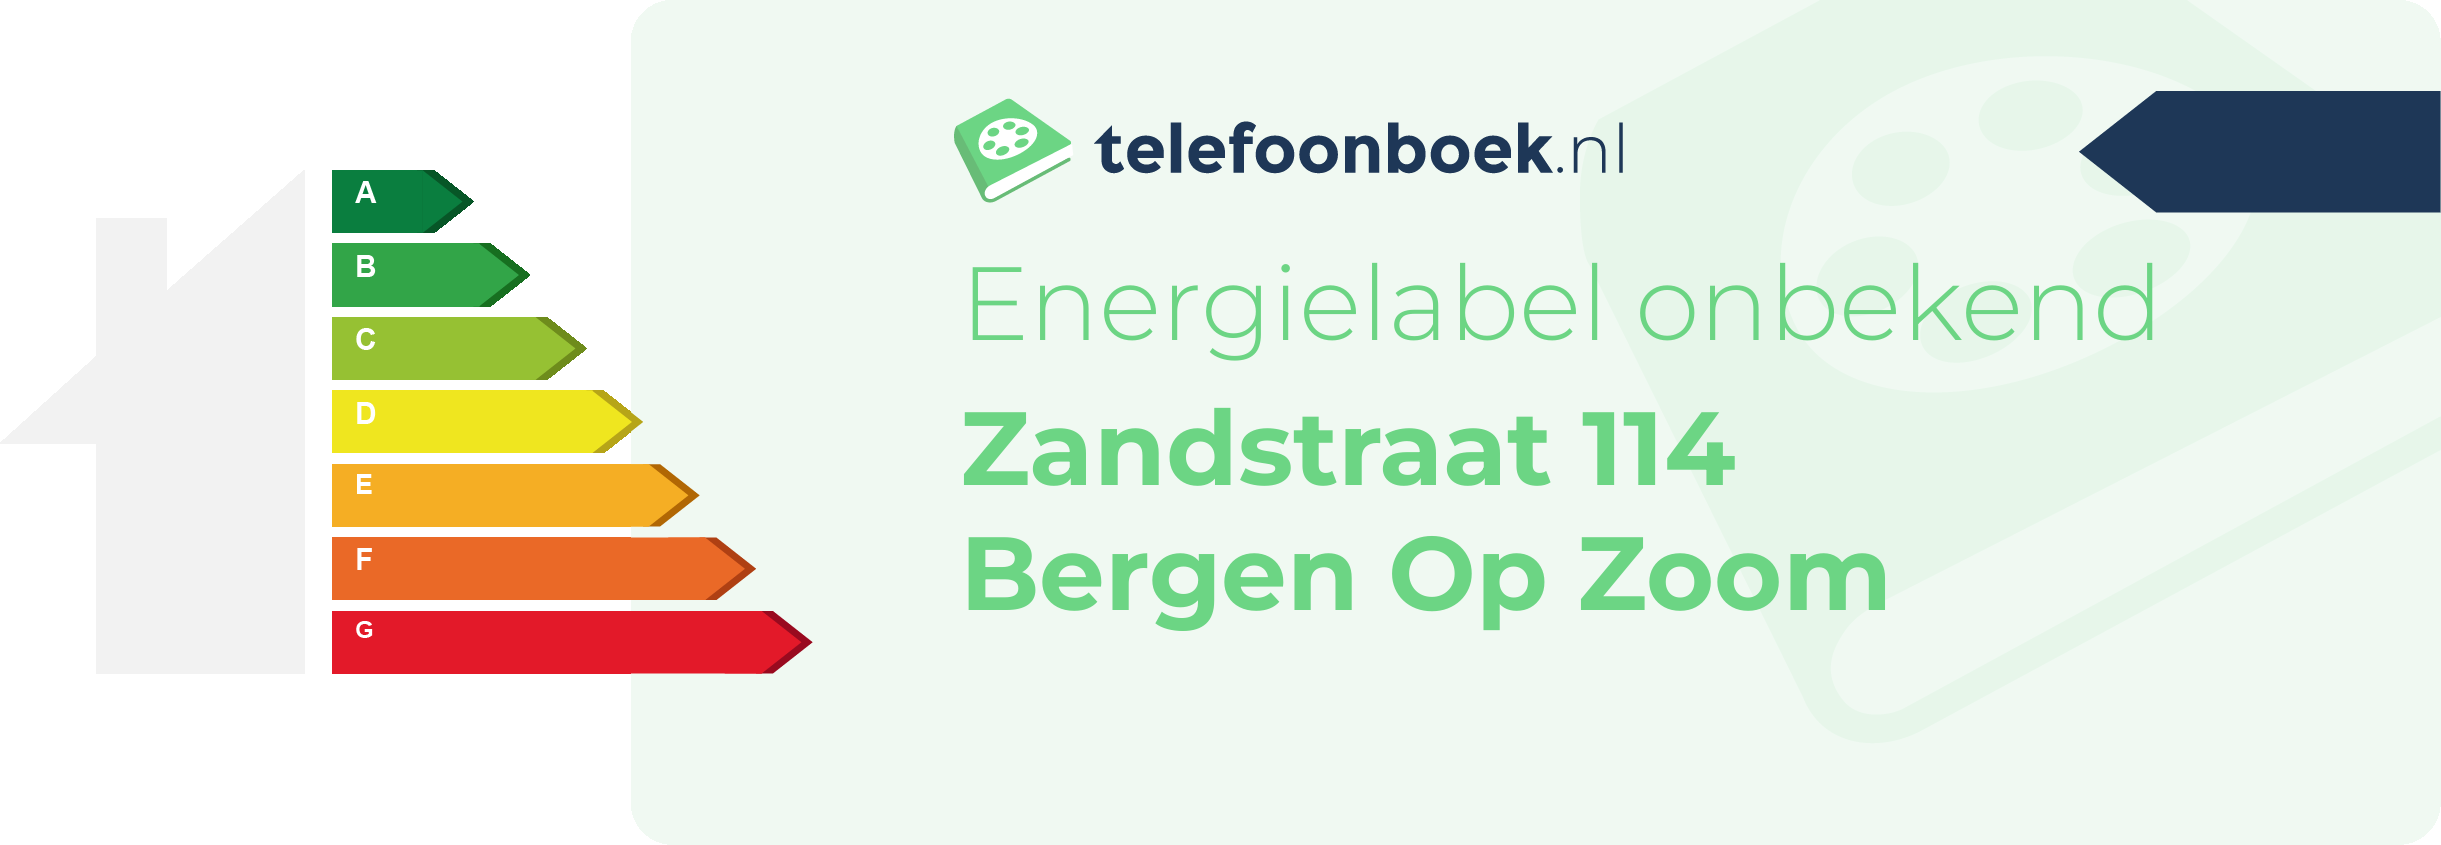 Energielabel Zandstraat 114 Bergen Op Zoom